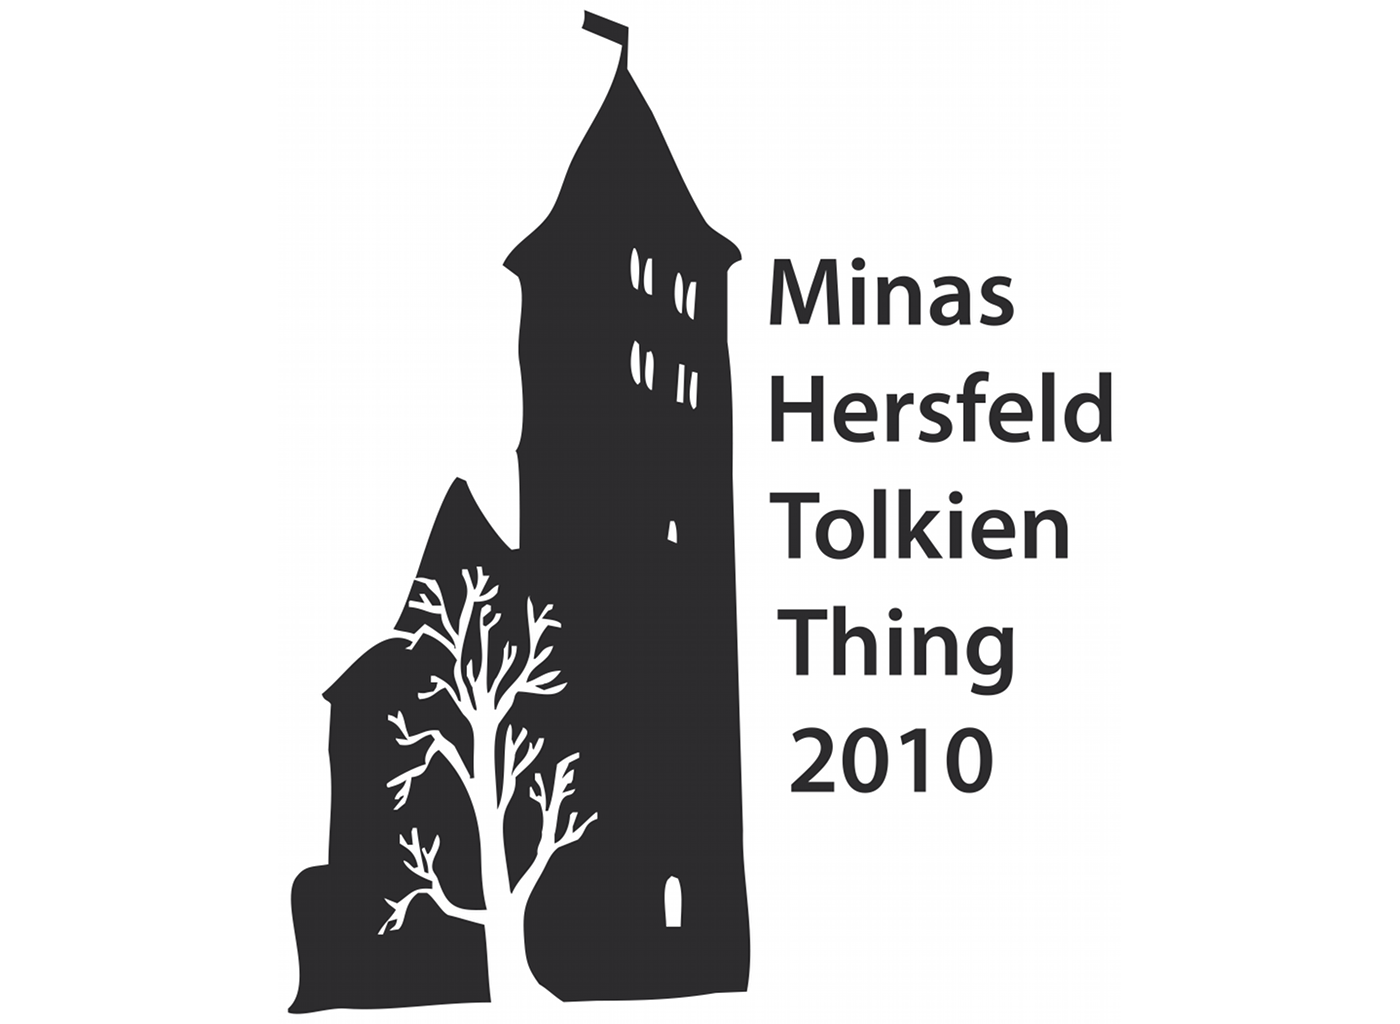 Vorankündigung zum Tolkien Thing 2010